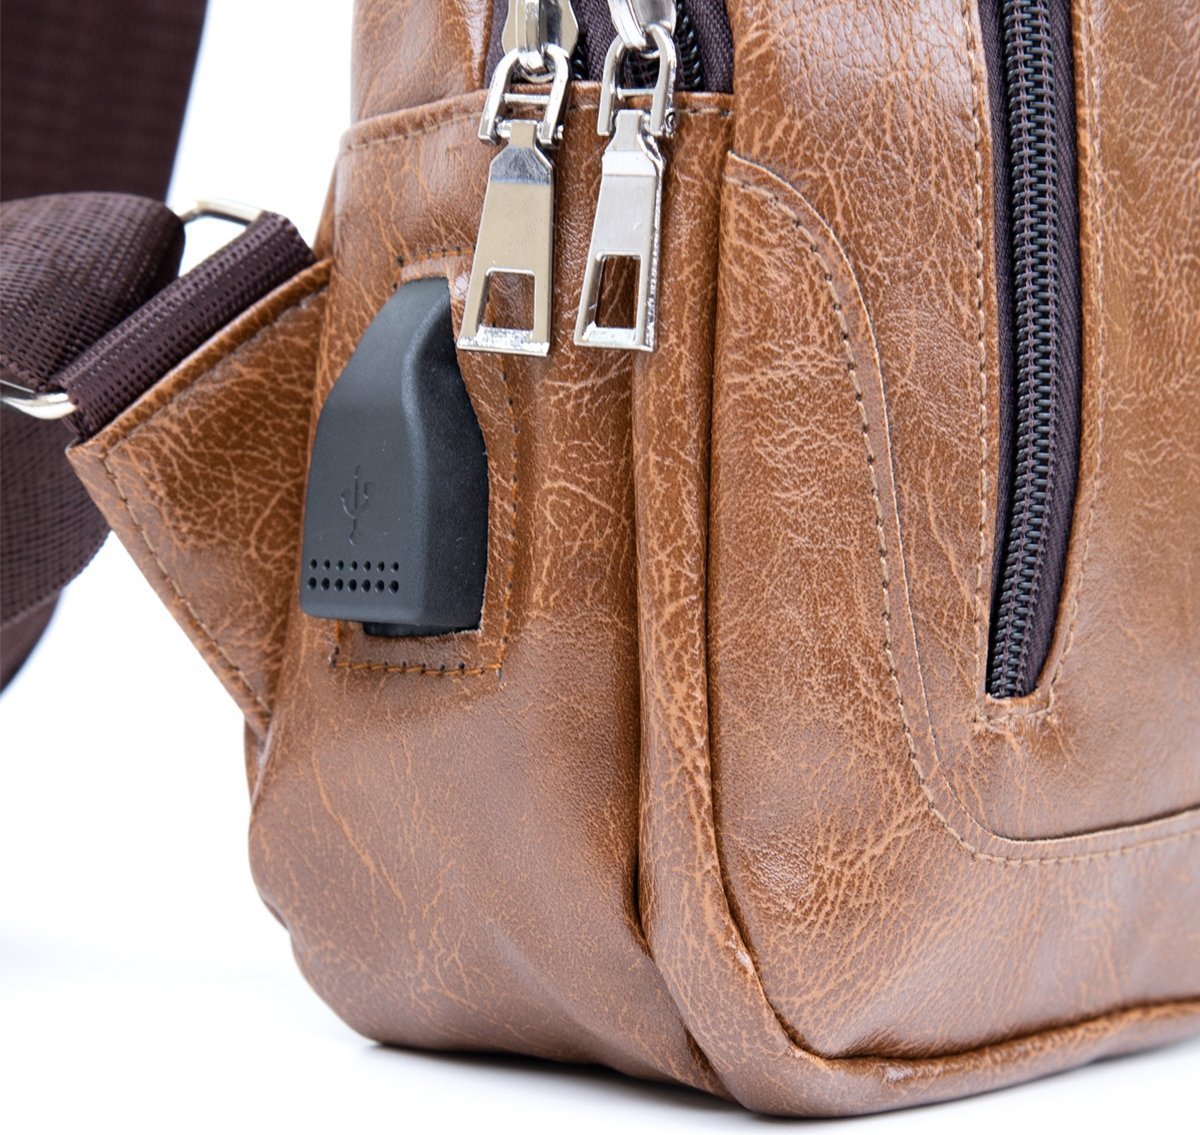 Светло-коричневая мужская сумка-рюкзак через плечо на два отделения из кожзама Vintage (20561)